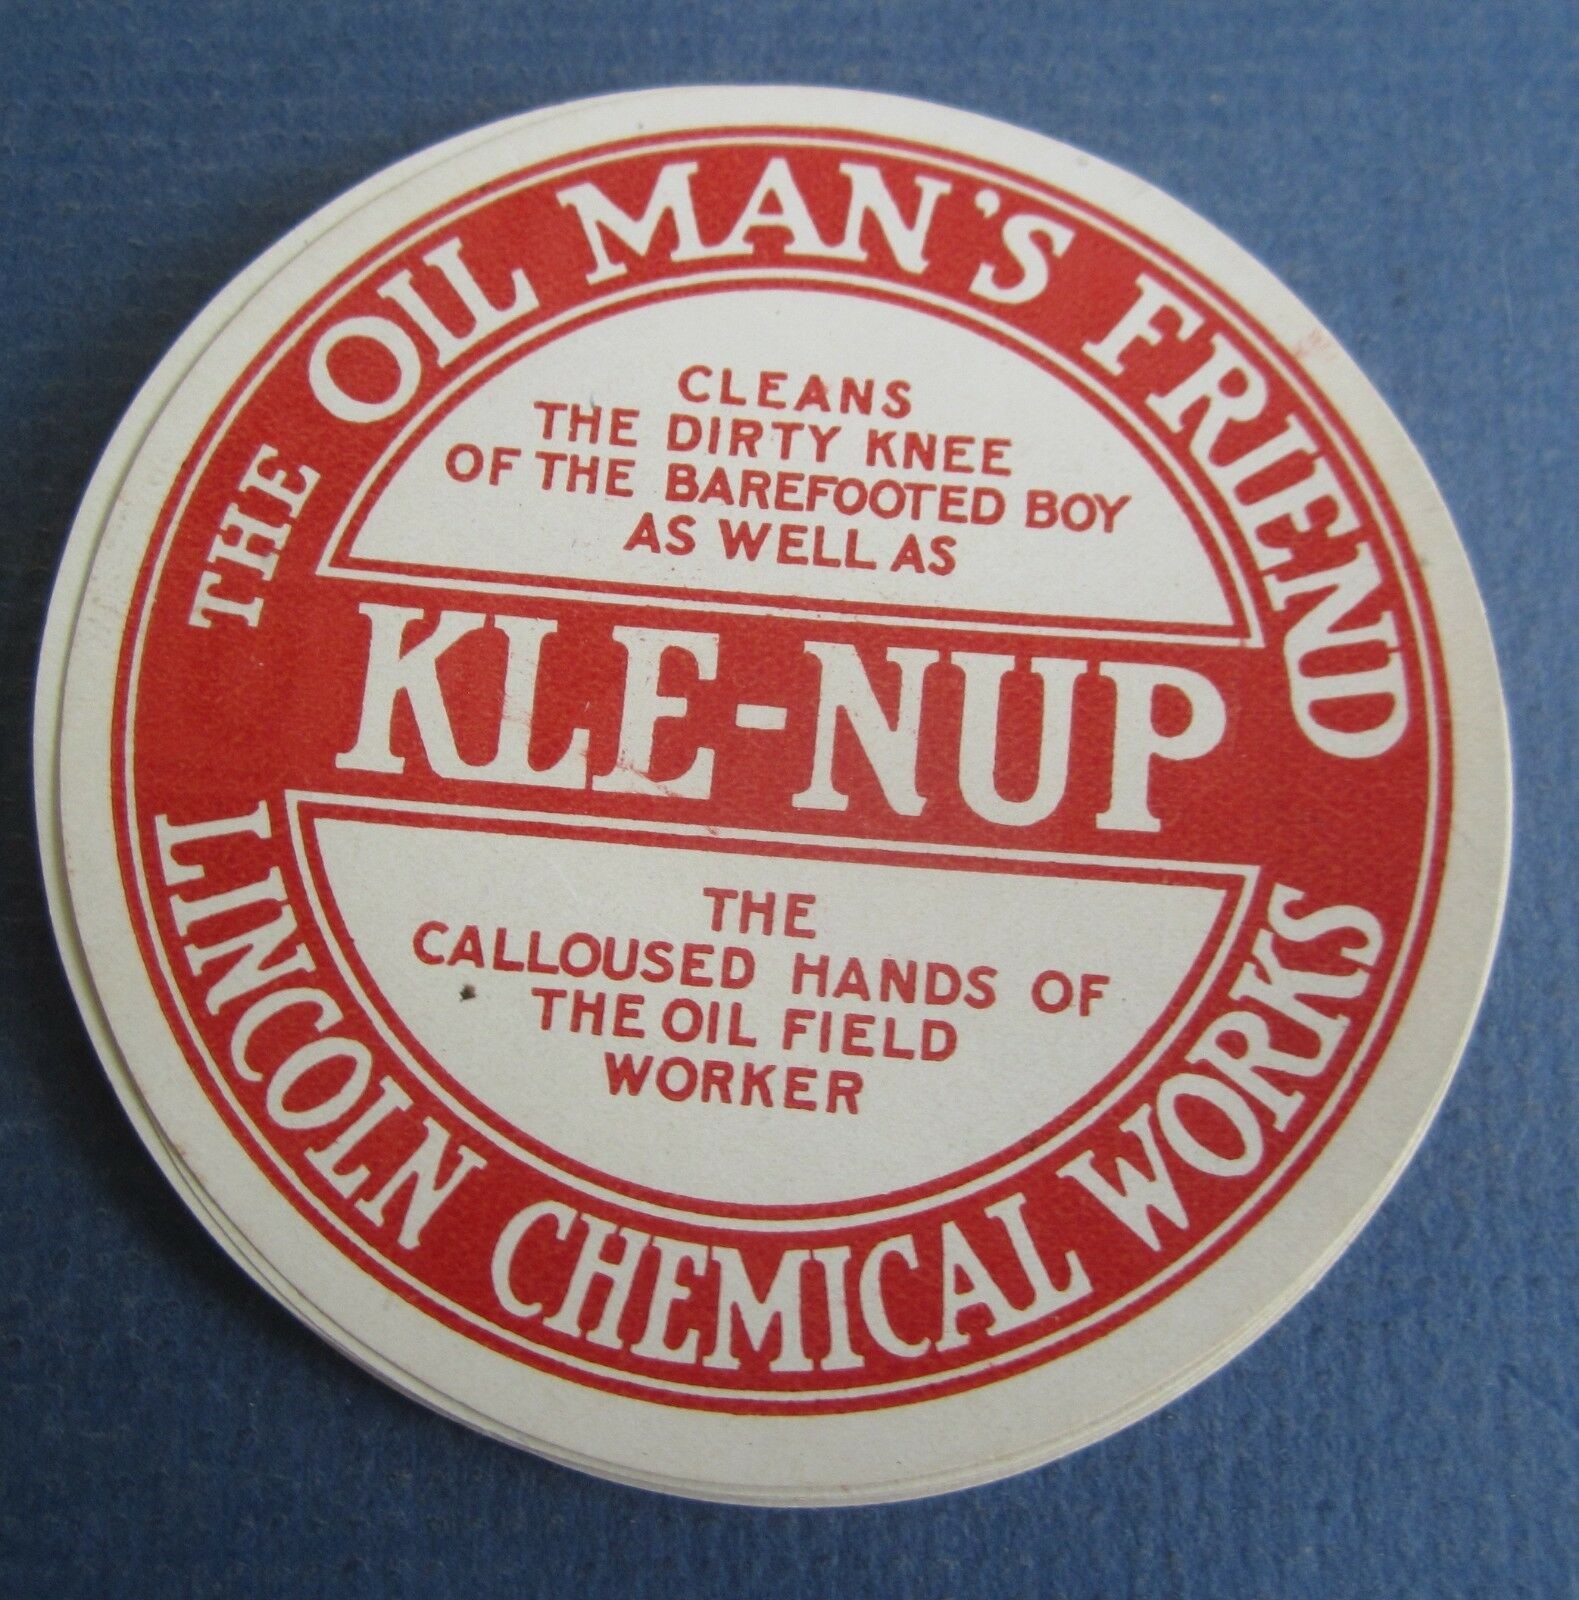 Lot of 25 Old Vintage KLE-NUP Soap LABELS - OIL...